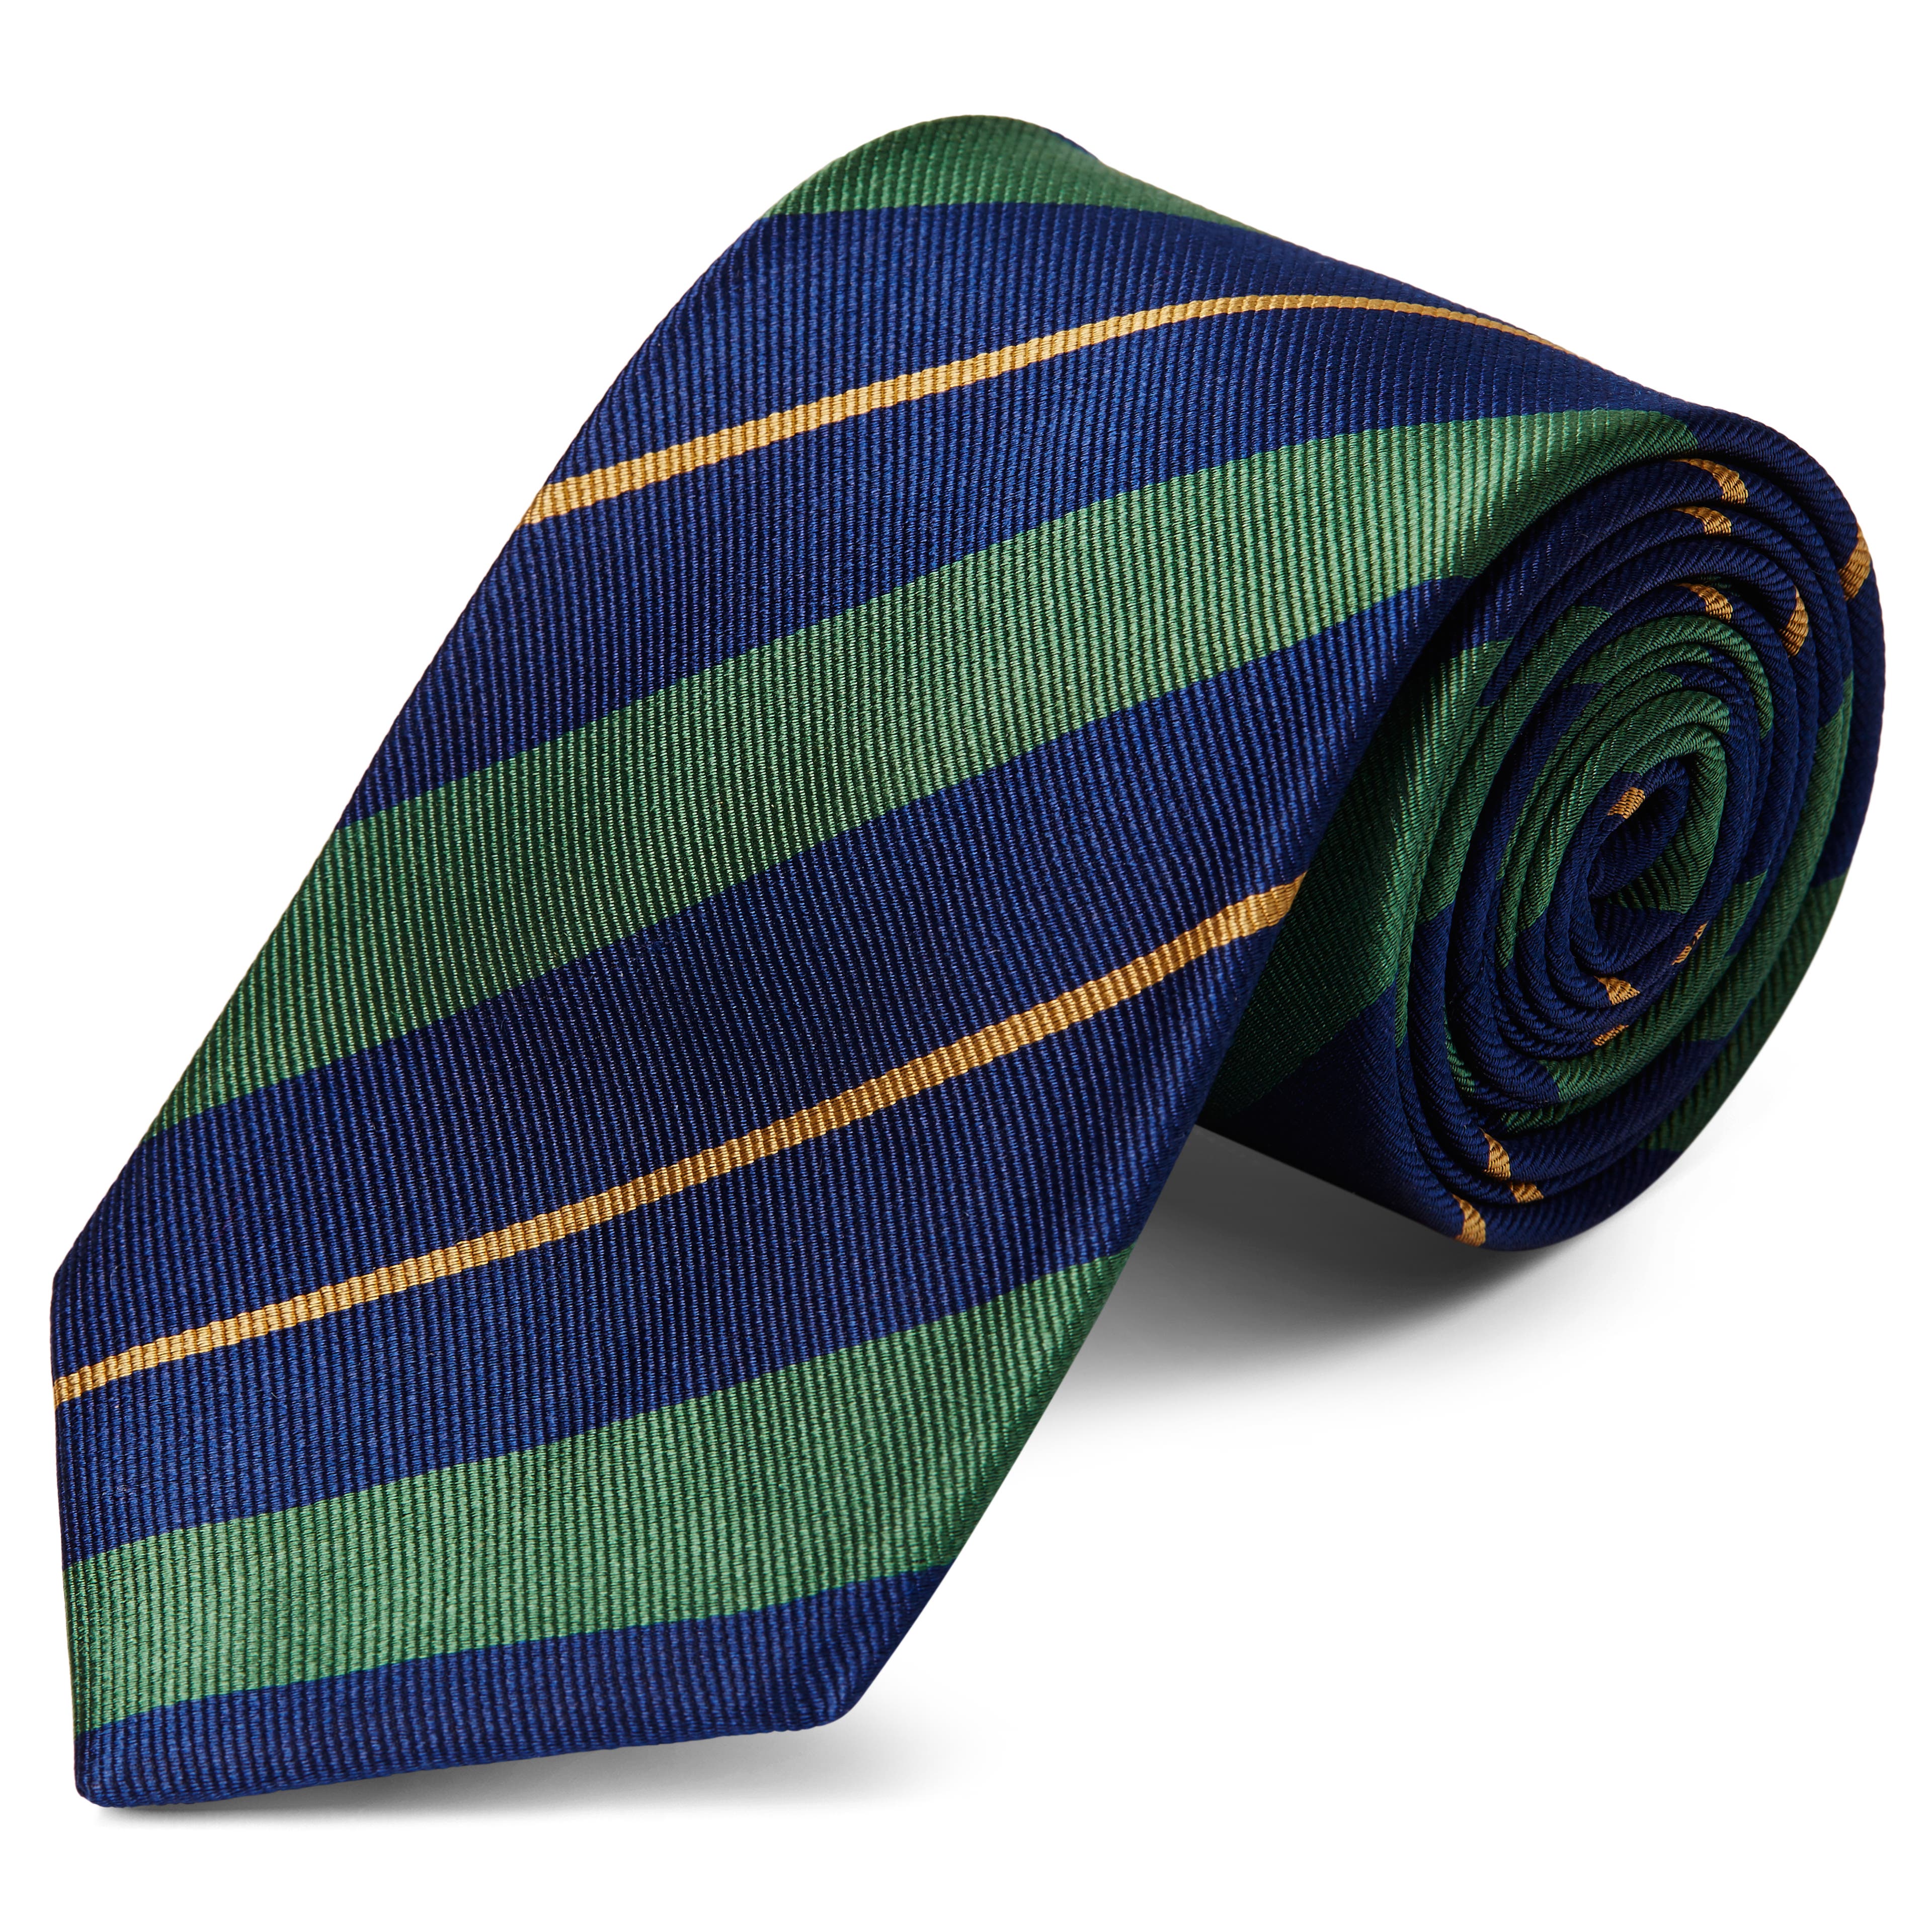 Corbata de 8 cm de seda azul marino con rayas verdes y doradas